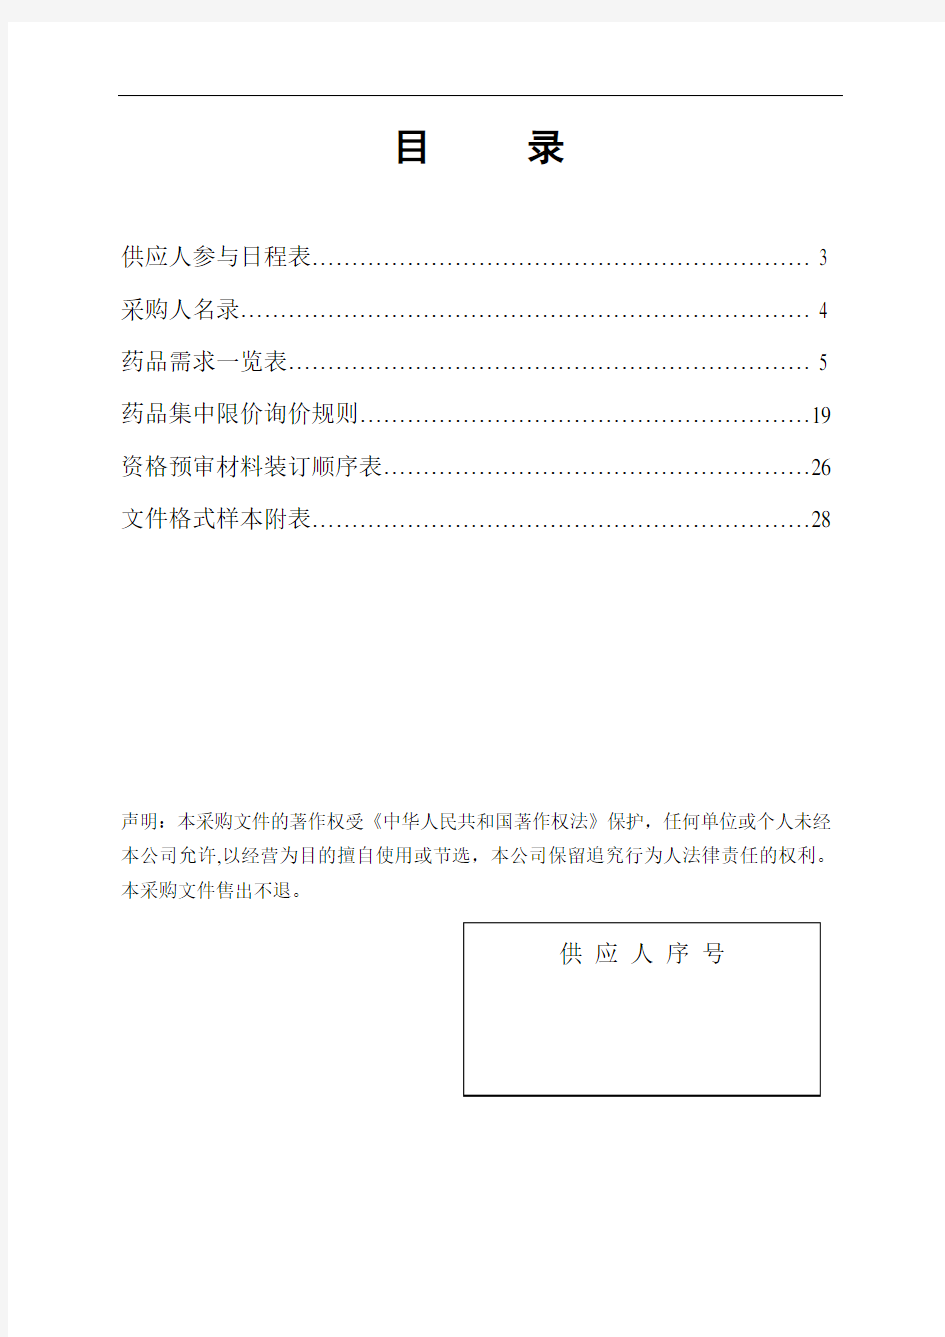 采购文件(含采购目录、格式附表)doc-药品挂网招标_采